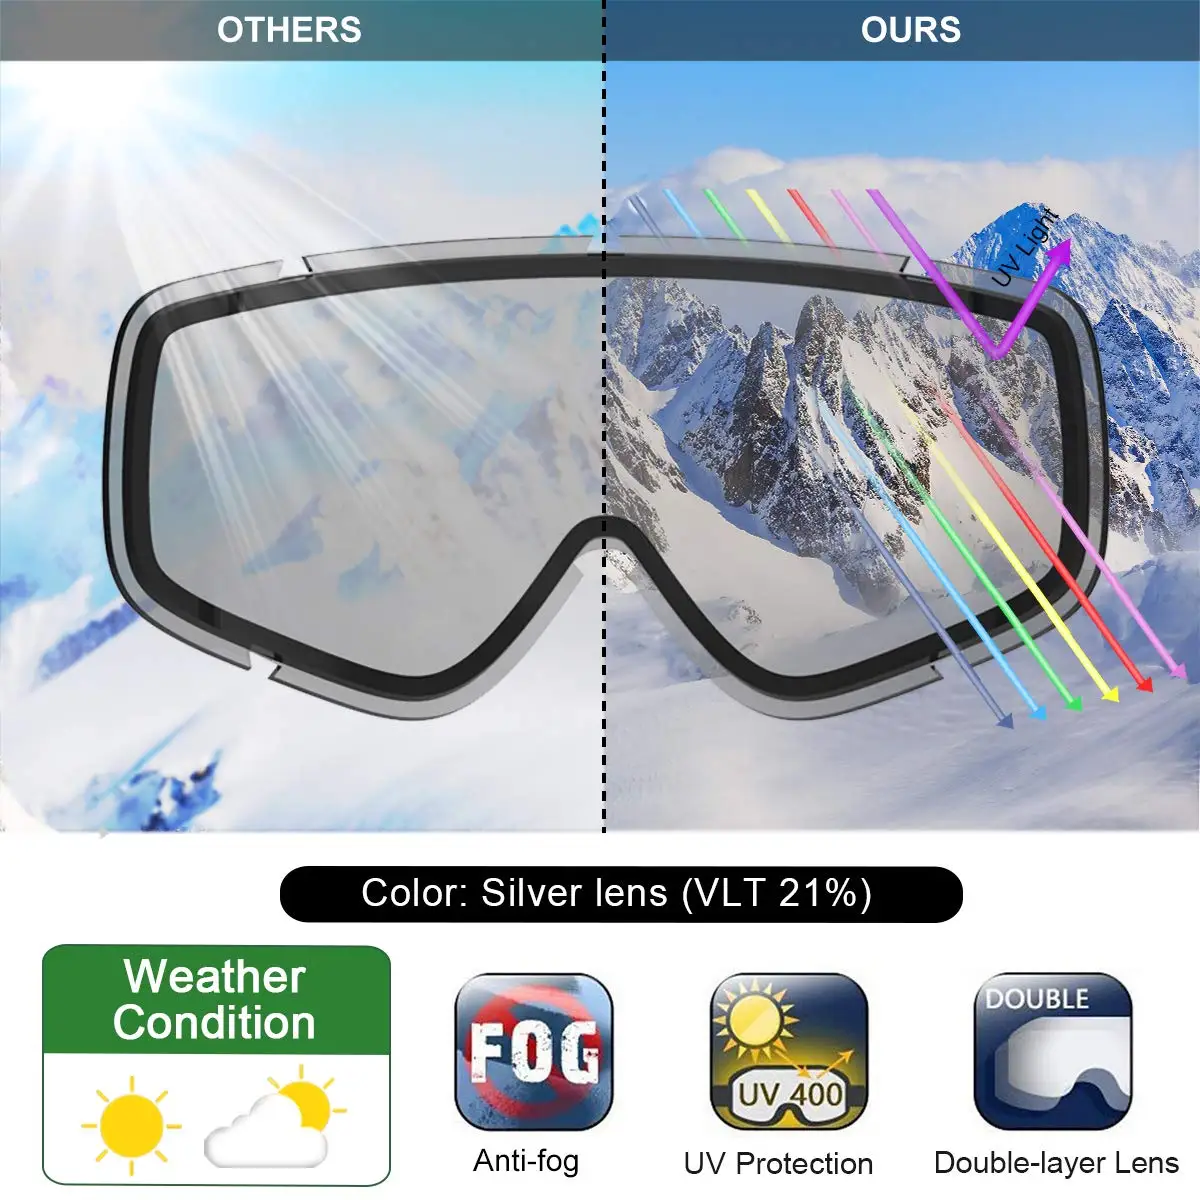 Защитные лыжные очки Findway, противотуманные зимние очки OTG с 100% искусственными линзами (8-14) для мальчиков и девочек-подростков, сноуборд